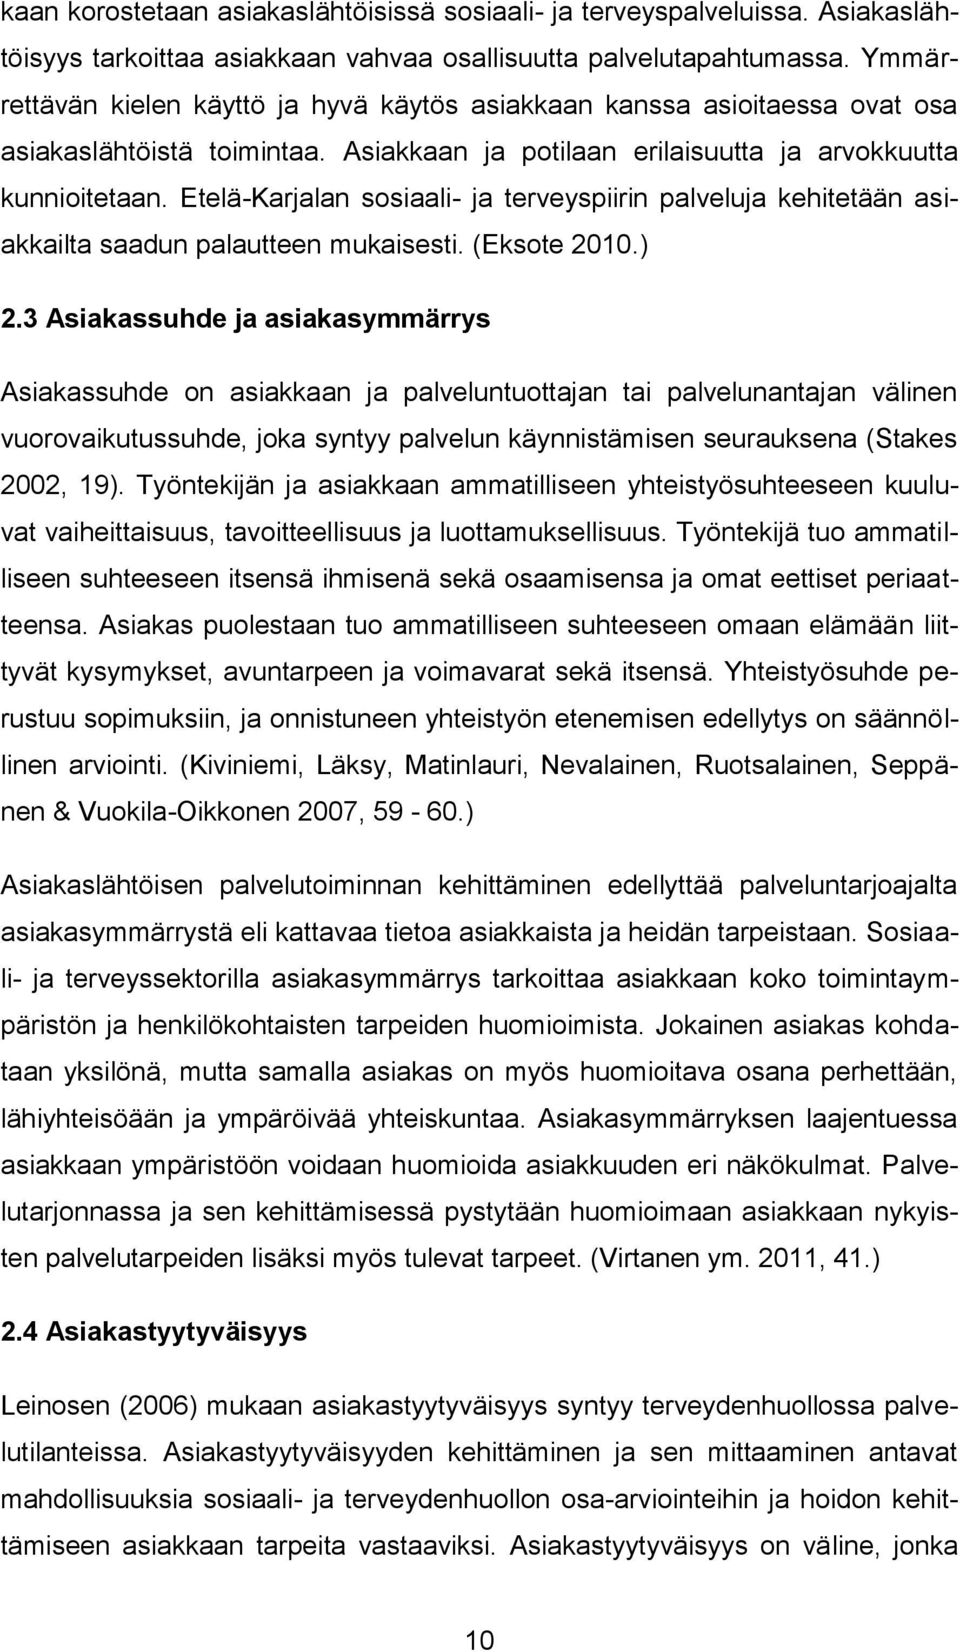 Etelä-Karjalan sosiaali- ja terveyspiirin palveluja kehitetään asiakkailta saadun palautteen mukaisesti. (Eksote 2010.) 2.